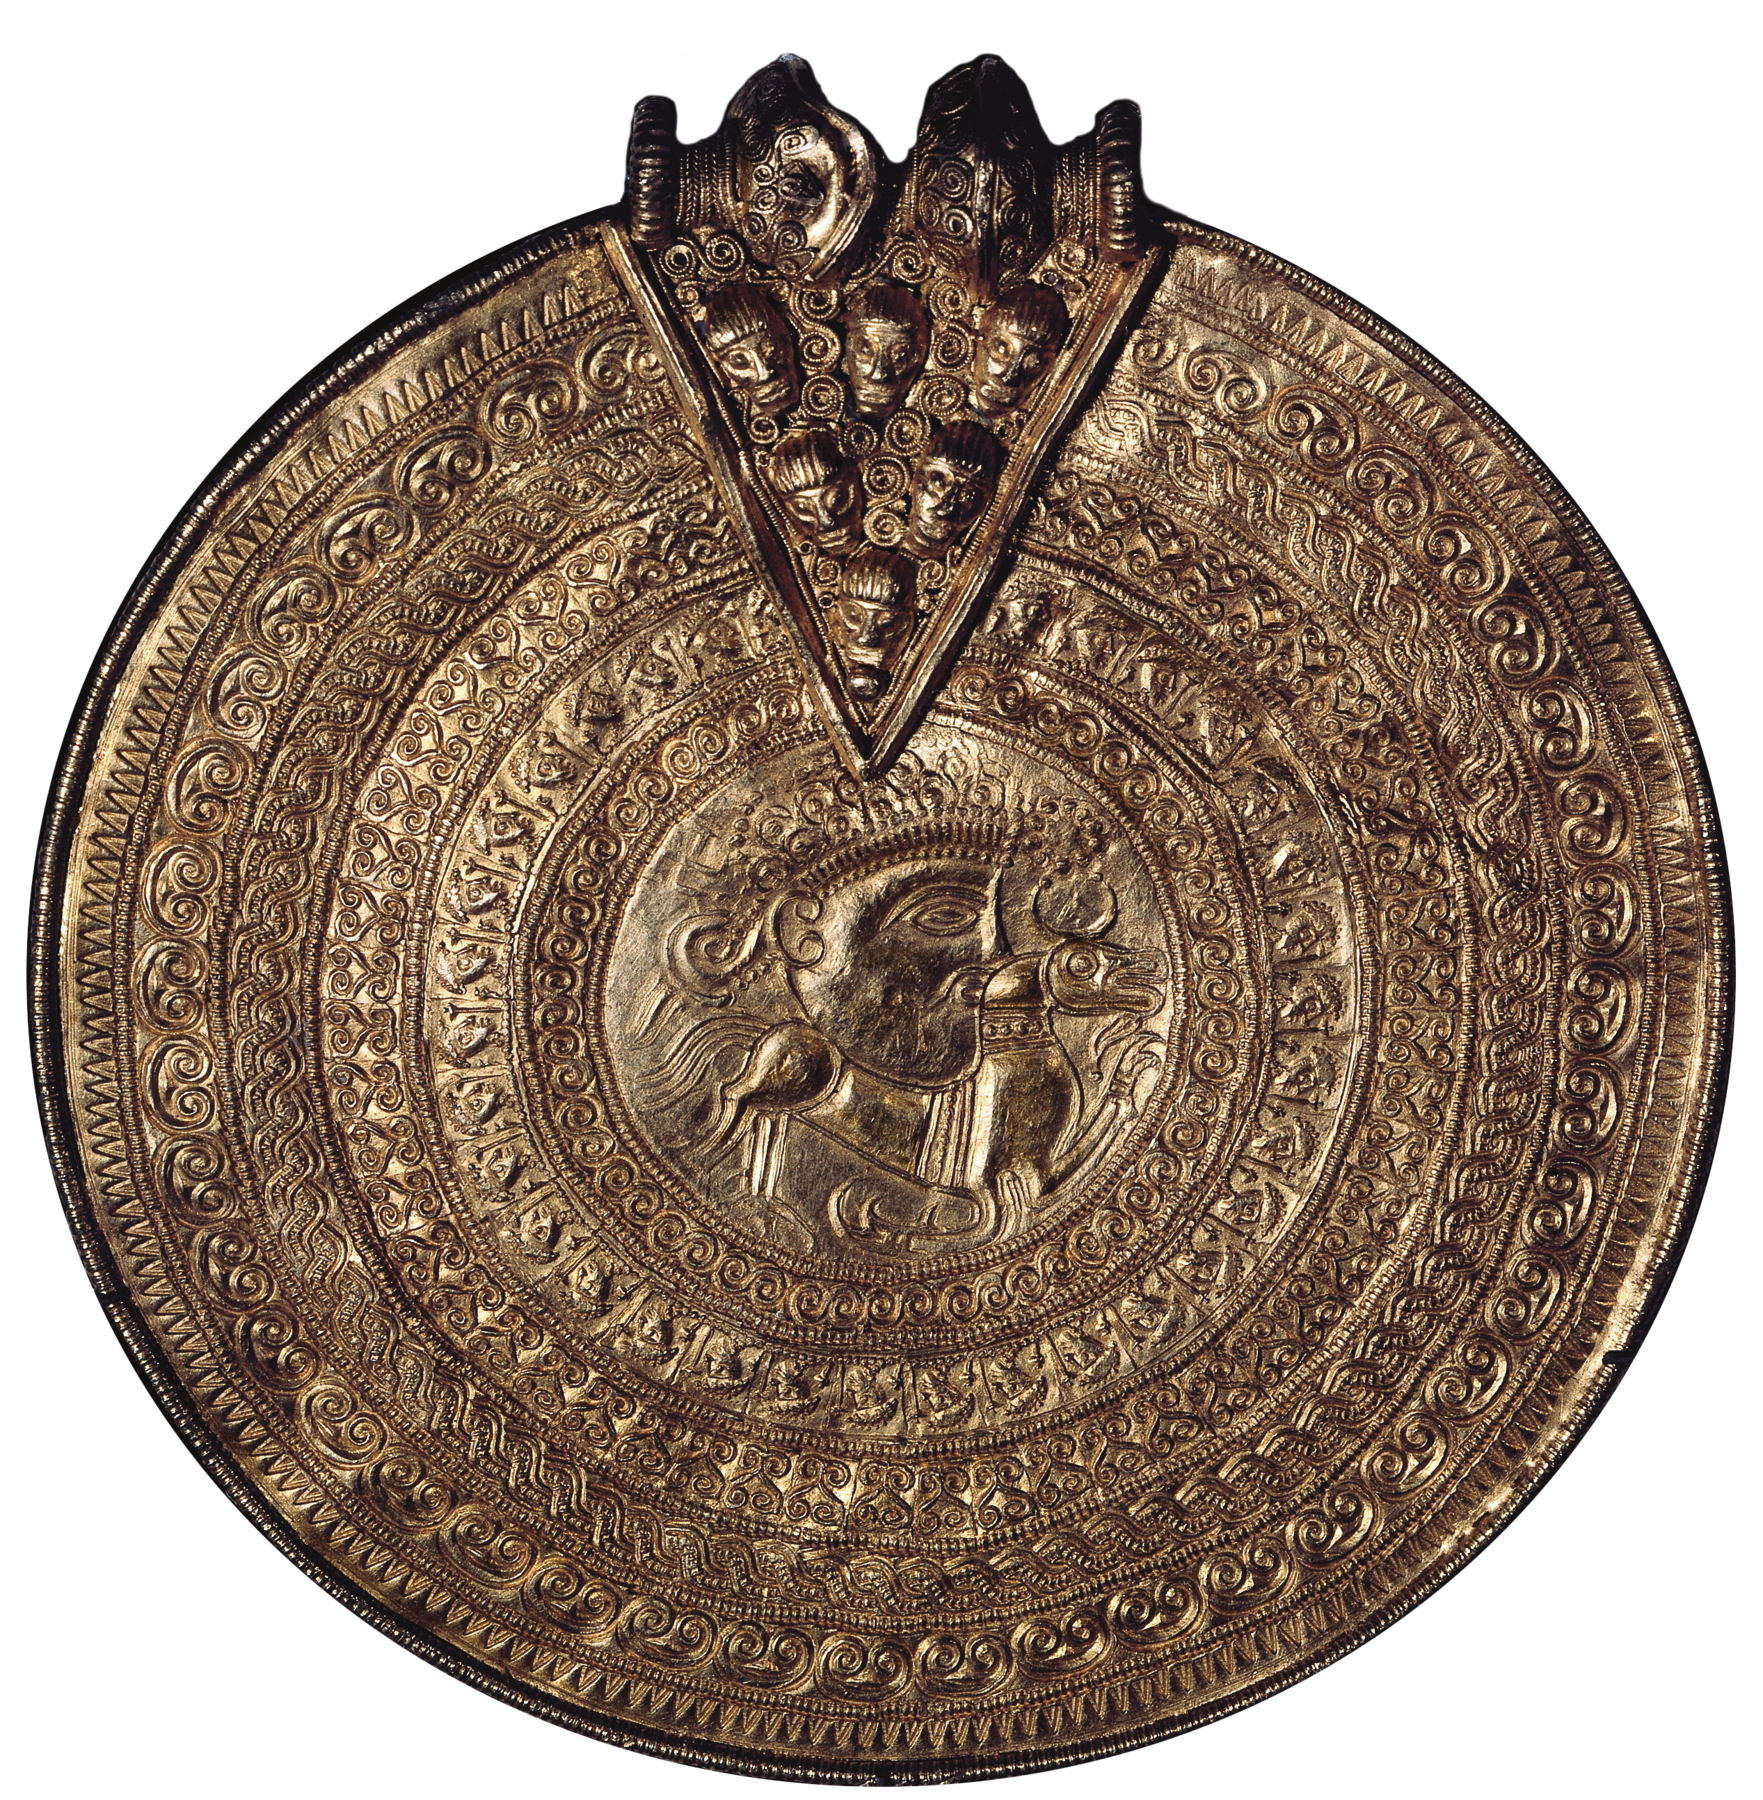 Amuleto. Objeto dourado de formato circular, contendo símbolos ao redor de um rosto visto de perfil ao centro. No topo, há um triângulo entalhado, contendo representações de rostos.